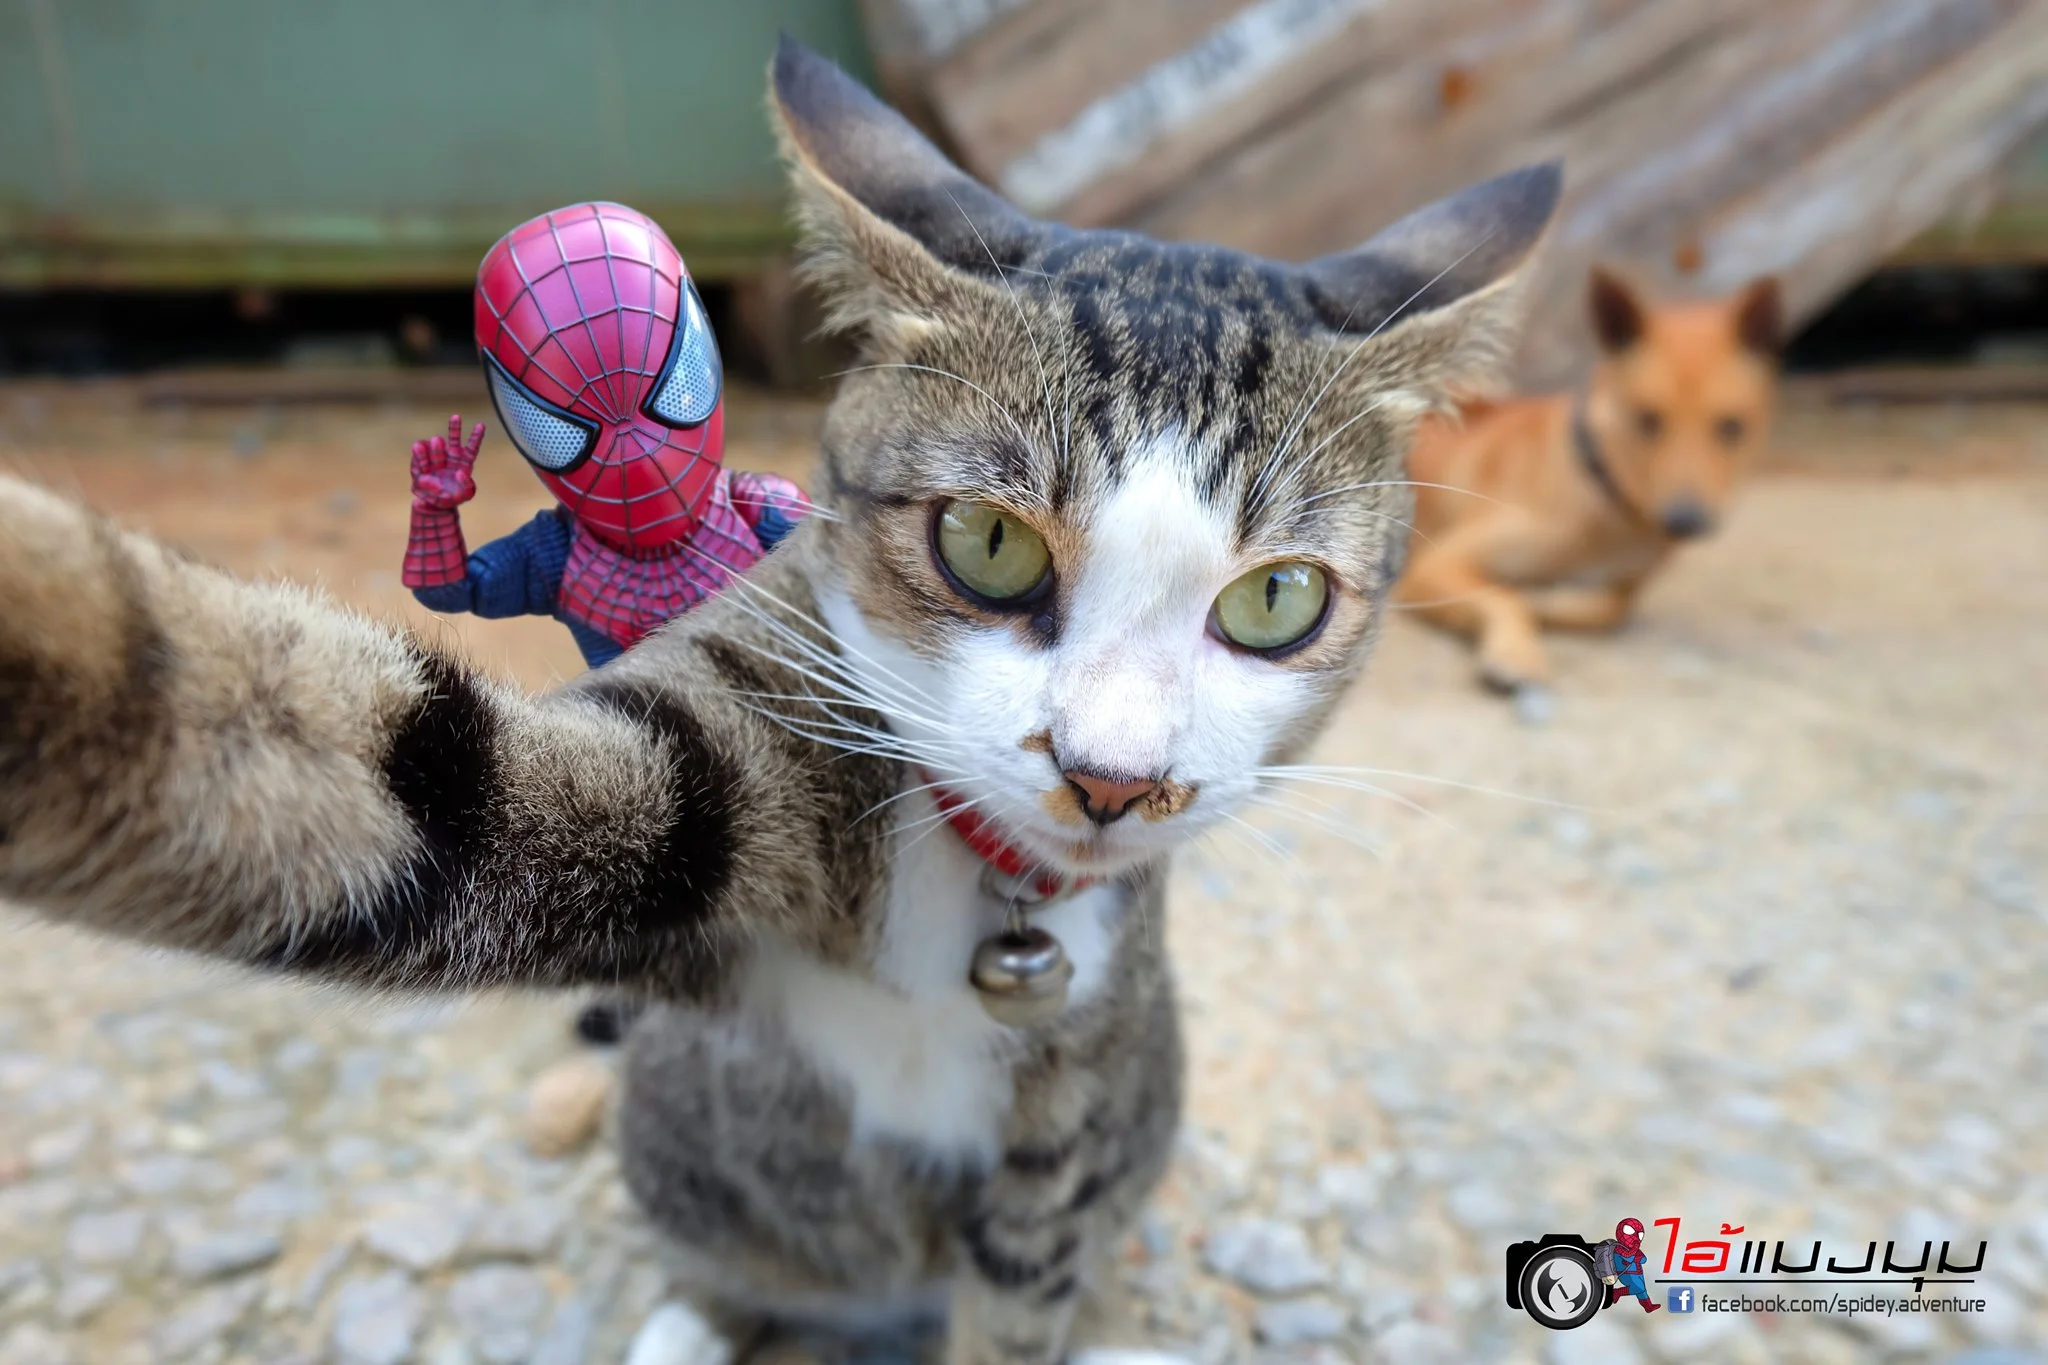 Художник добавил к фото с котиками изображение Человека-паука – это выглядит очень смешно - фото 459364